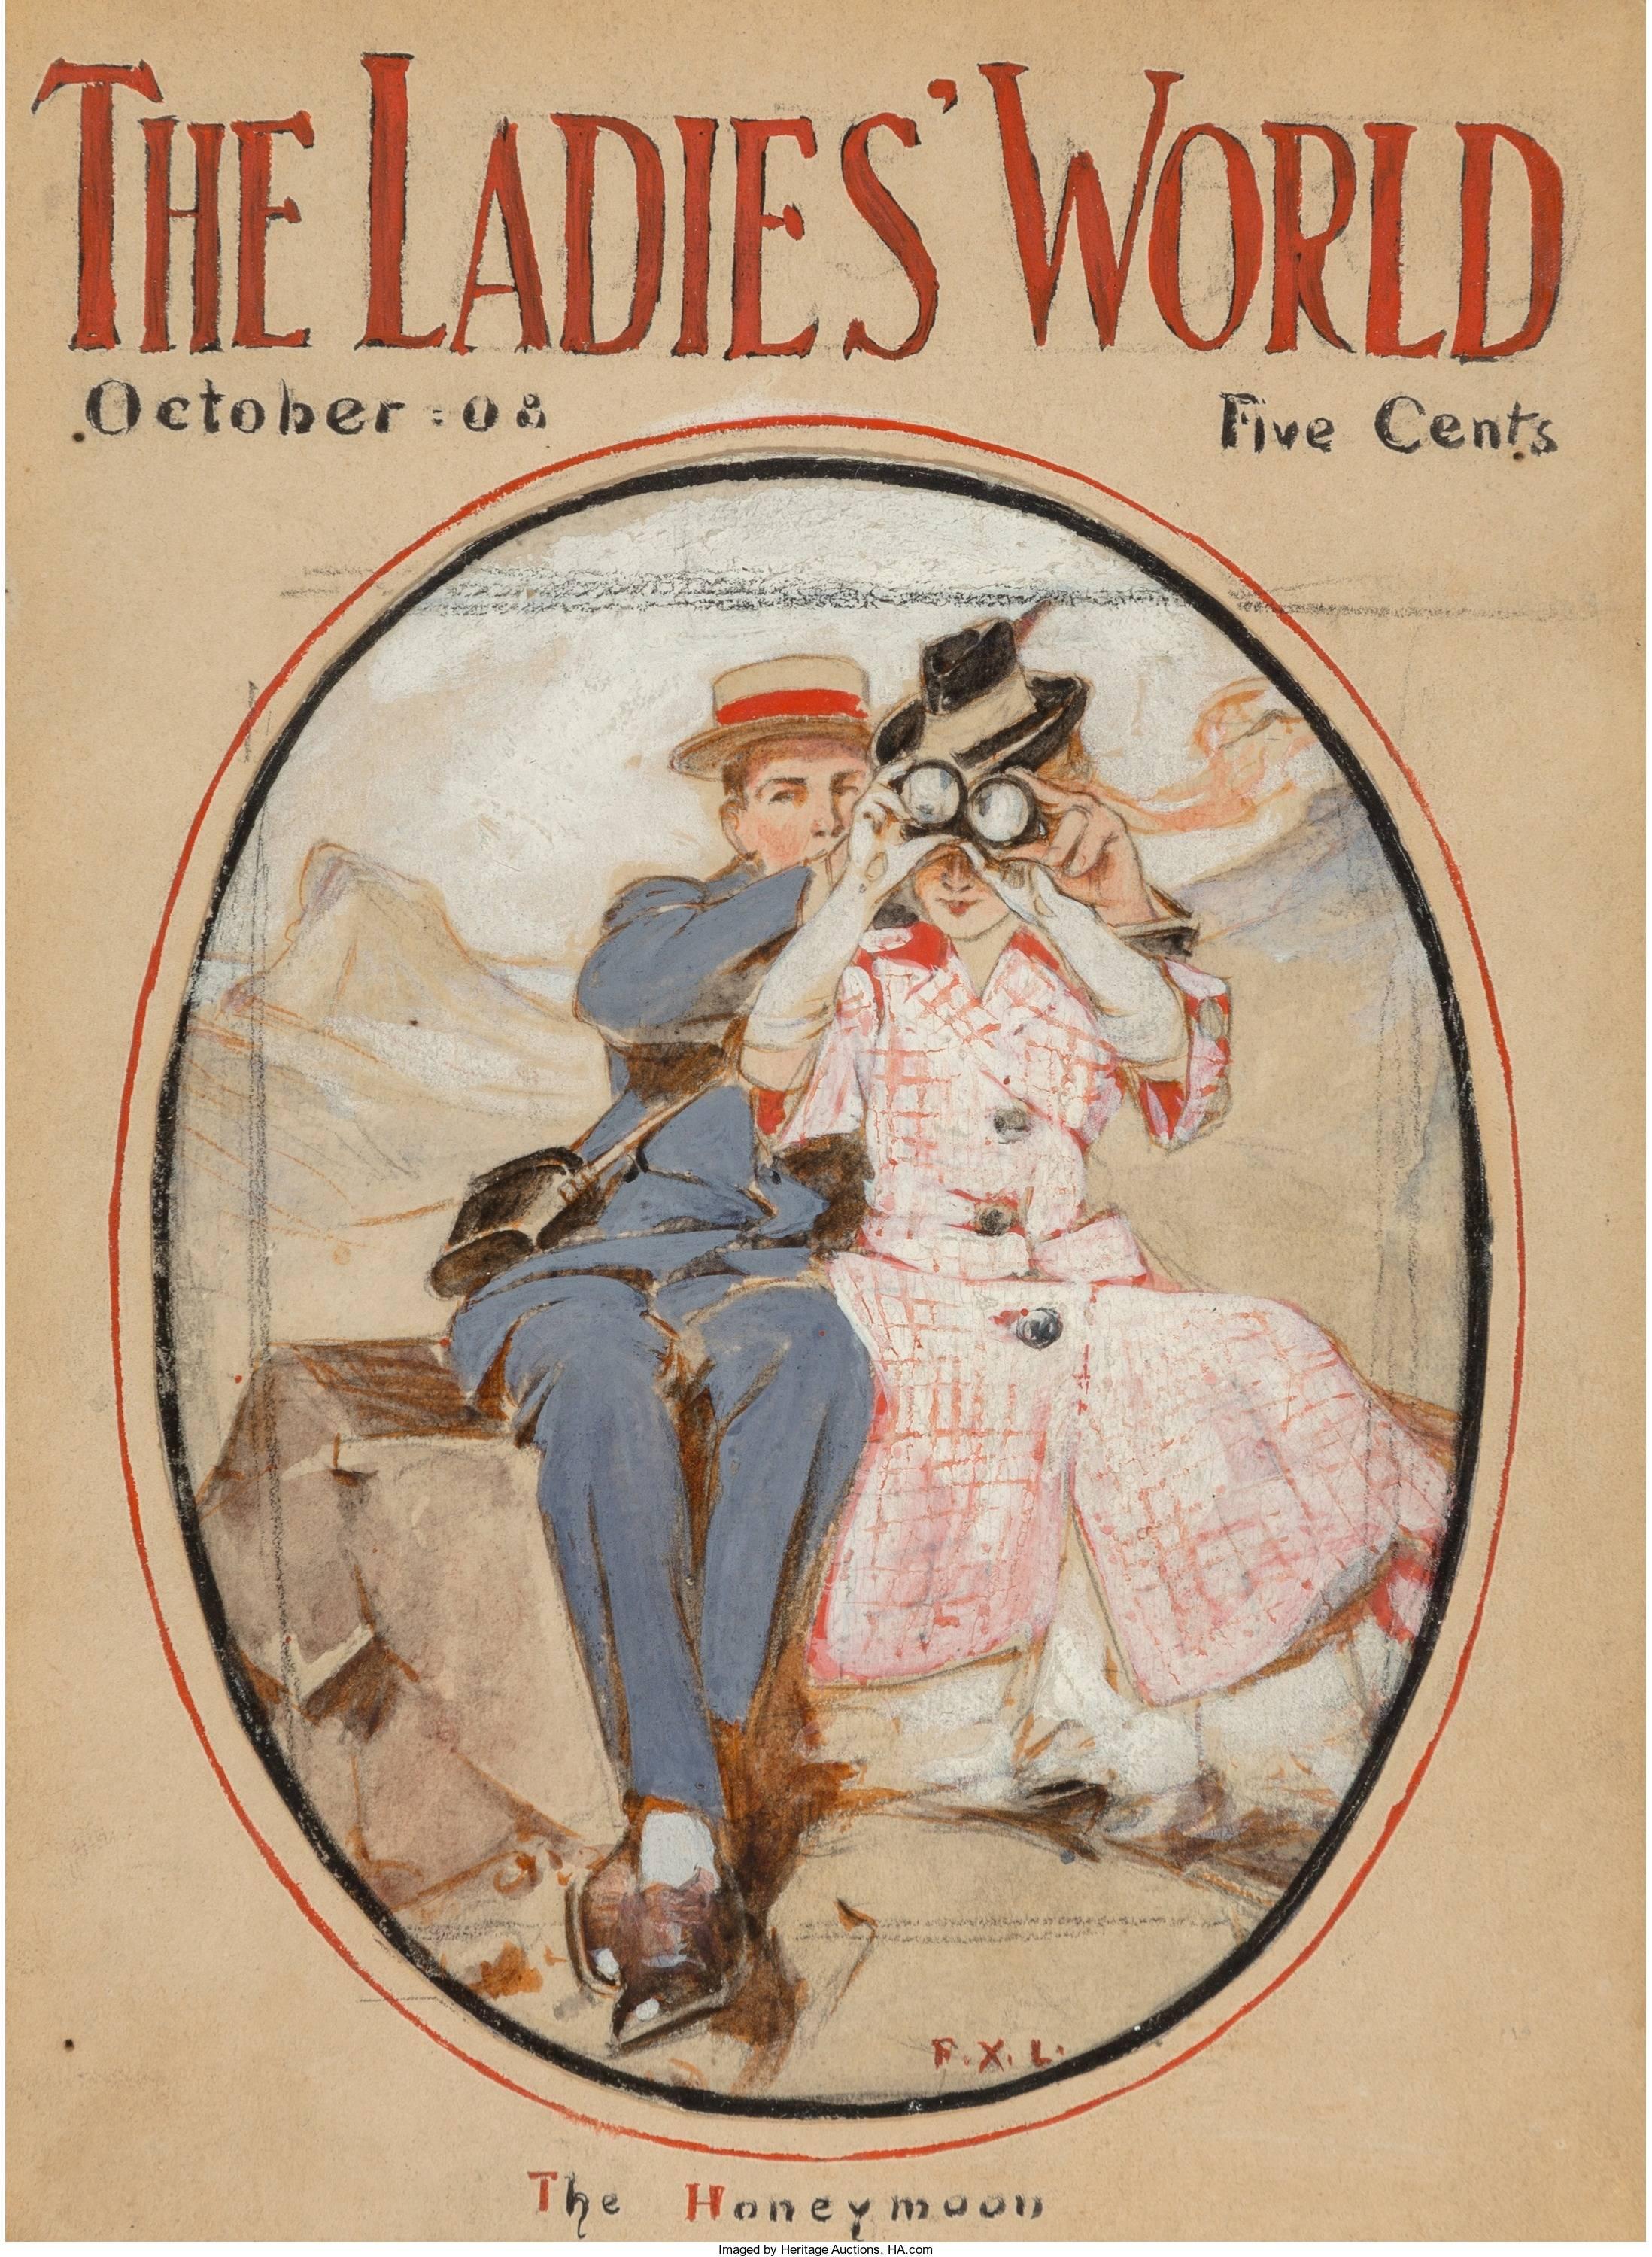 The Honeymoon, Titelseite des Ladies World Magazine, Oktober 1908